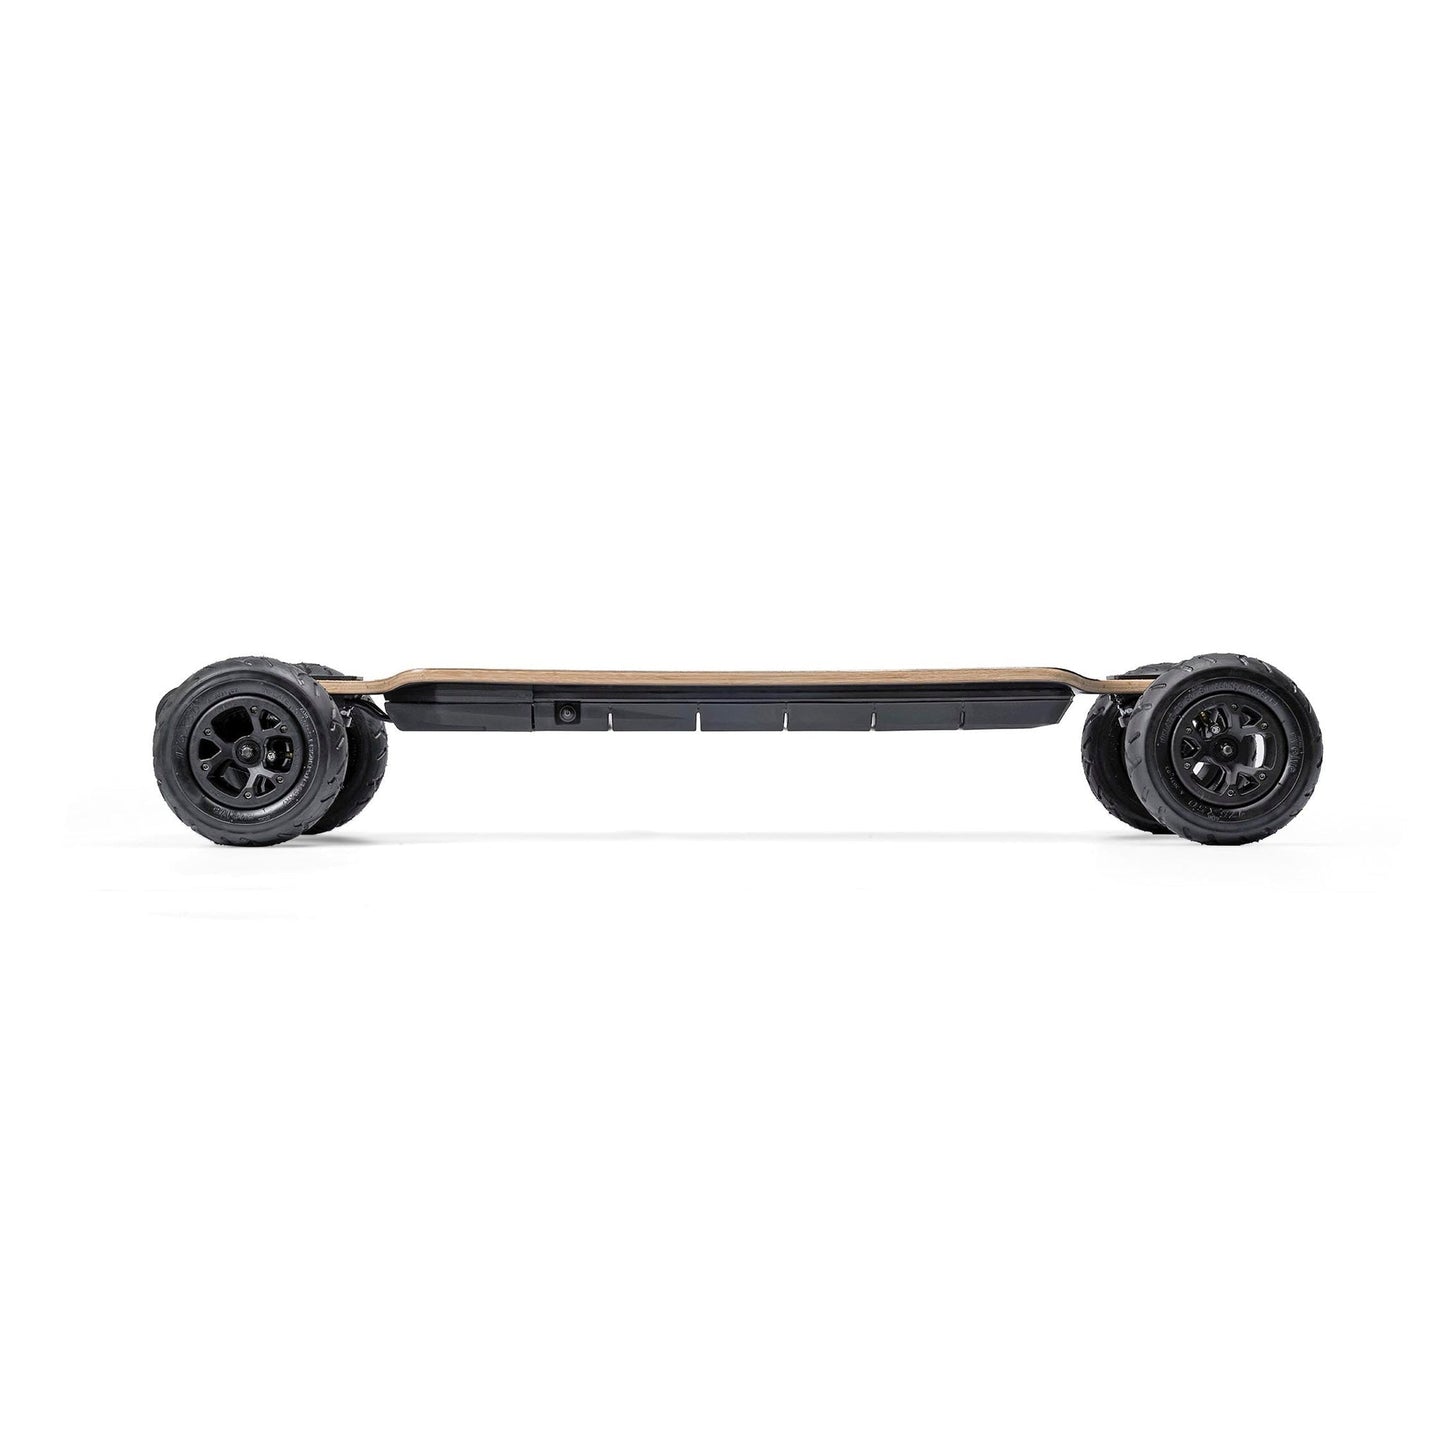 Evolve Skateboards Bamboo GTR All Terrain - SERIES 2